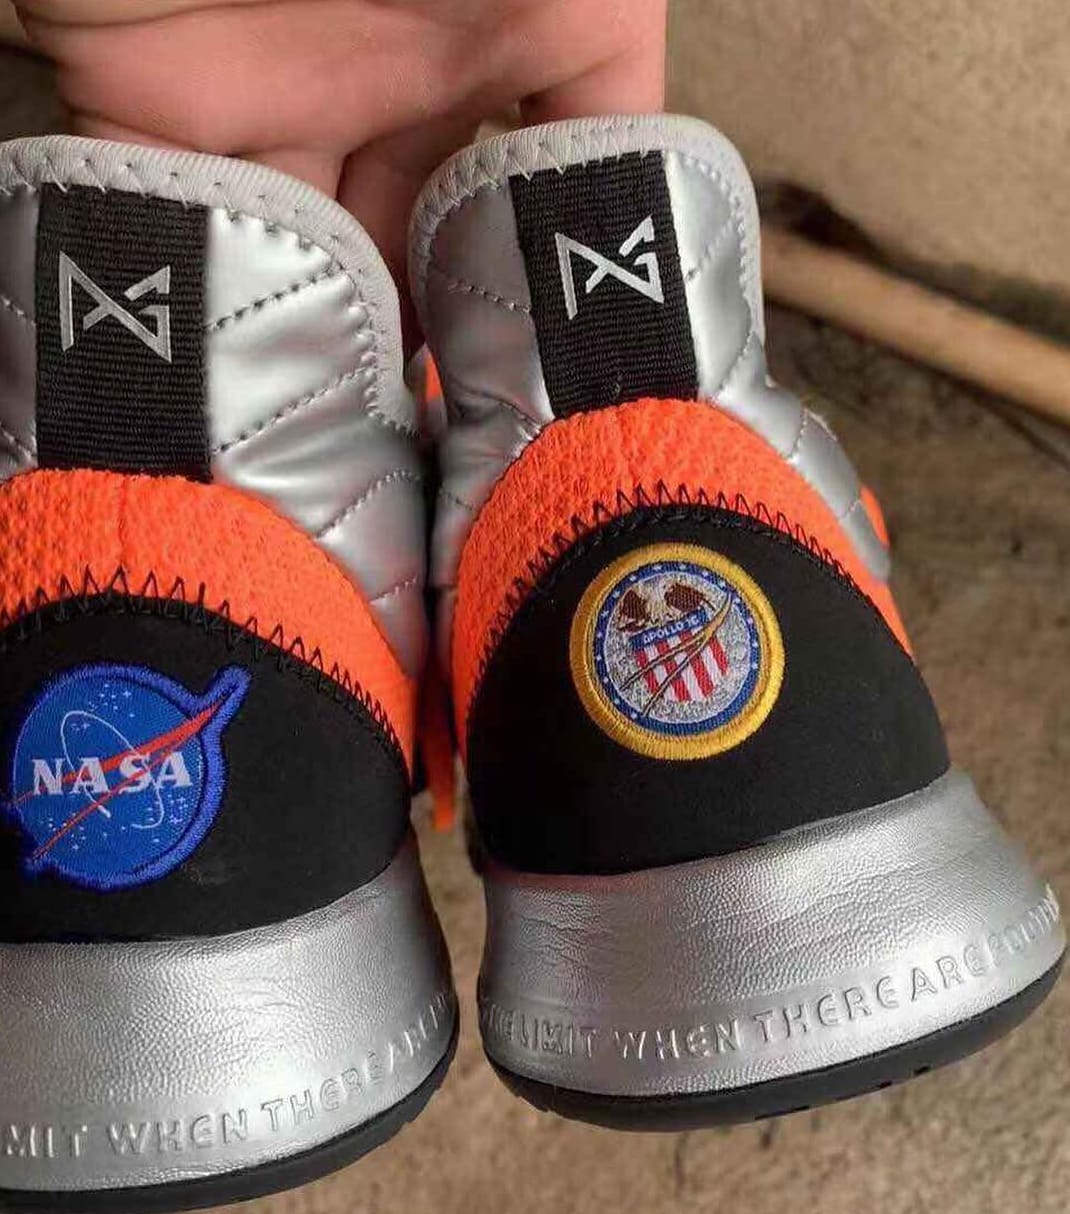 Is Paul George Getting a NASA x Nike 